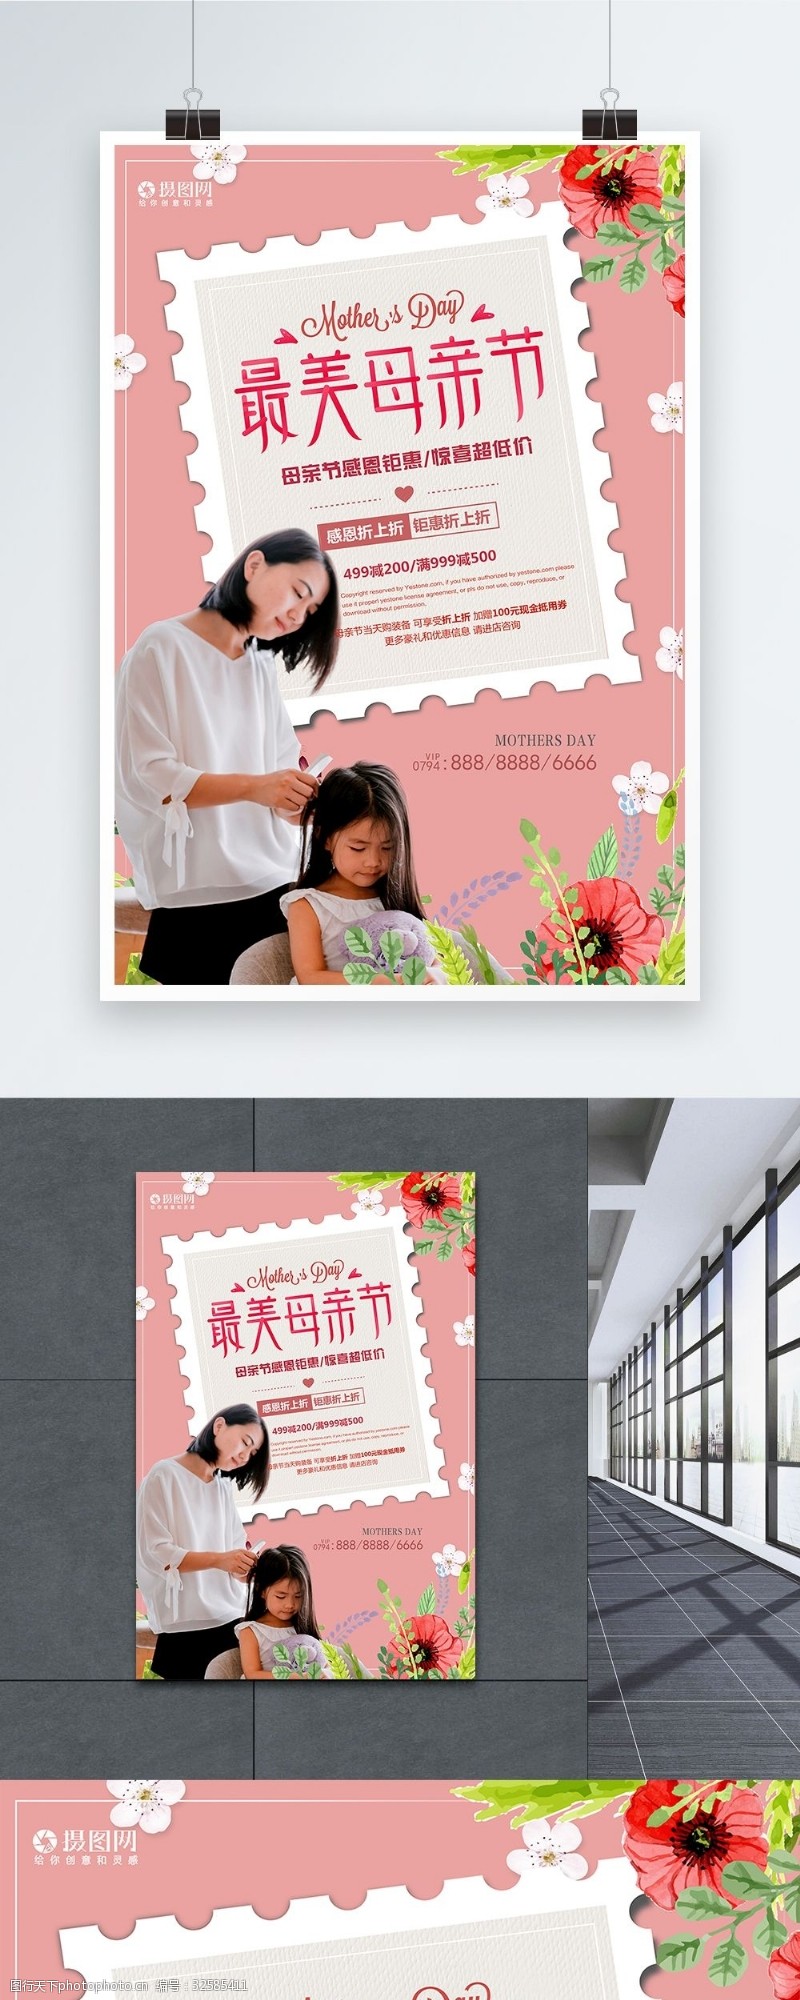 创意小清新最美母亲节促销活动海报